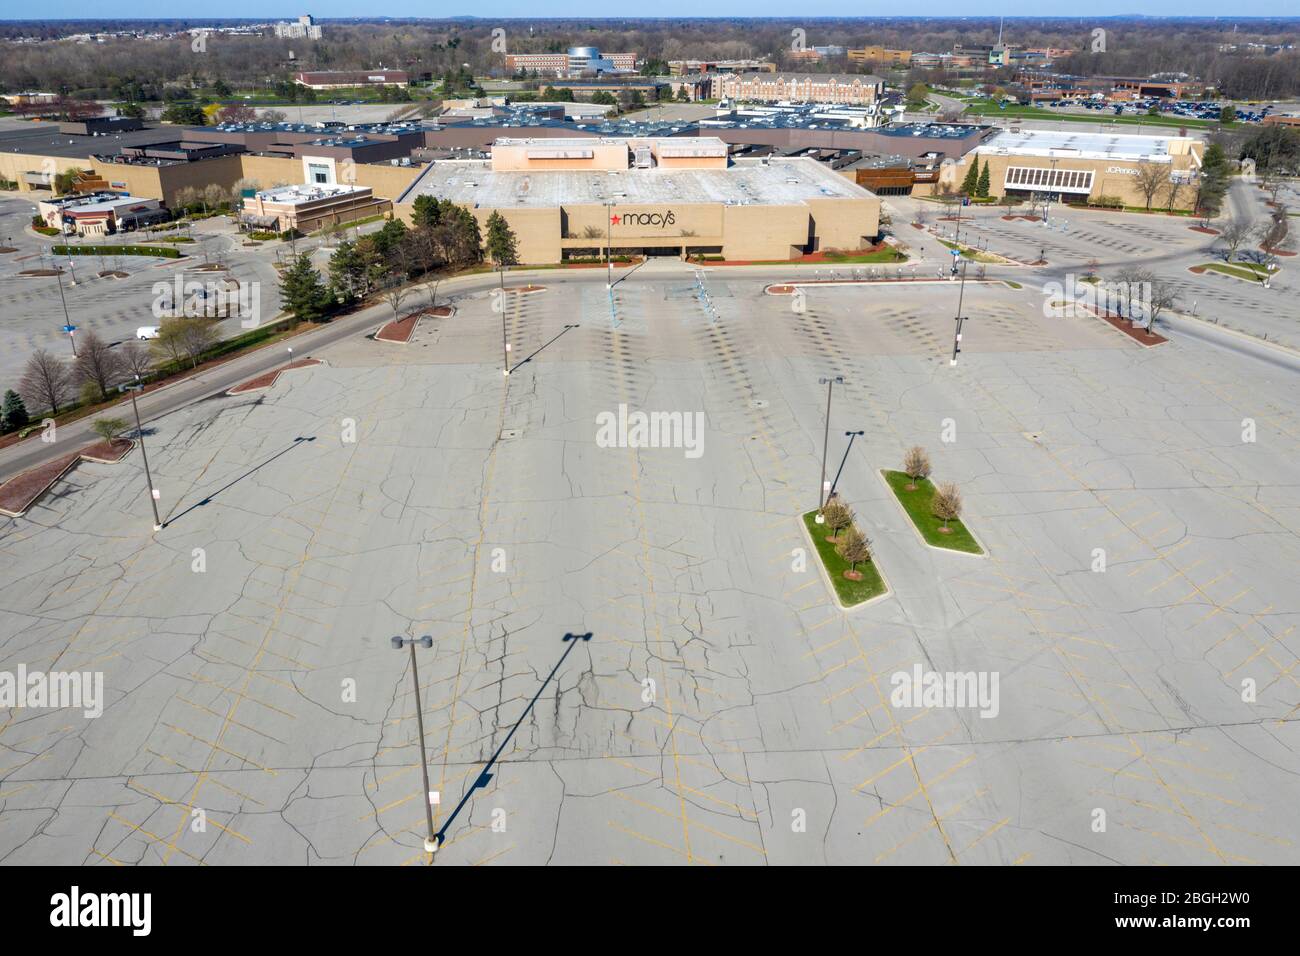 Dearborn, Michigan, USA. April 2020. Das Fairlane Town Center, ein großes regionales Einkaufszentrum in den Vororten von Detroit, ist wegen der Coronavirus-Pandemie geschlossen. Der Parkplatz ist leer. Kredit: Jim West/Alamy Live News Stockfoto